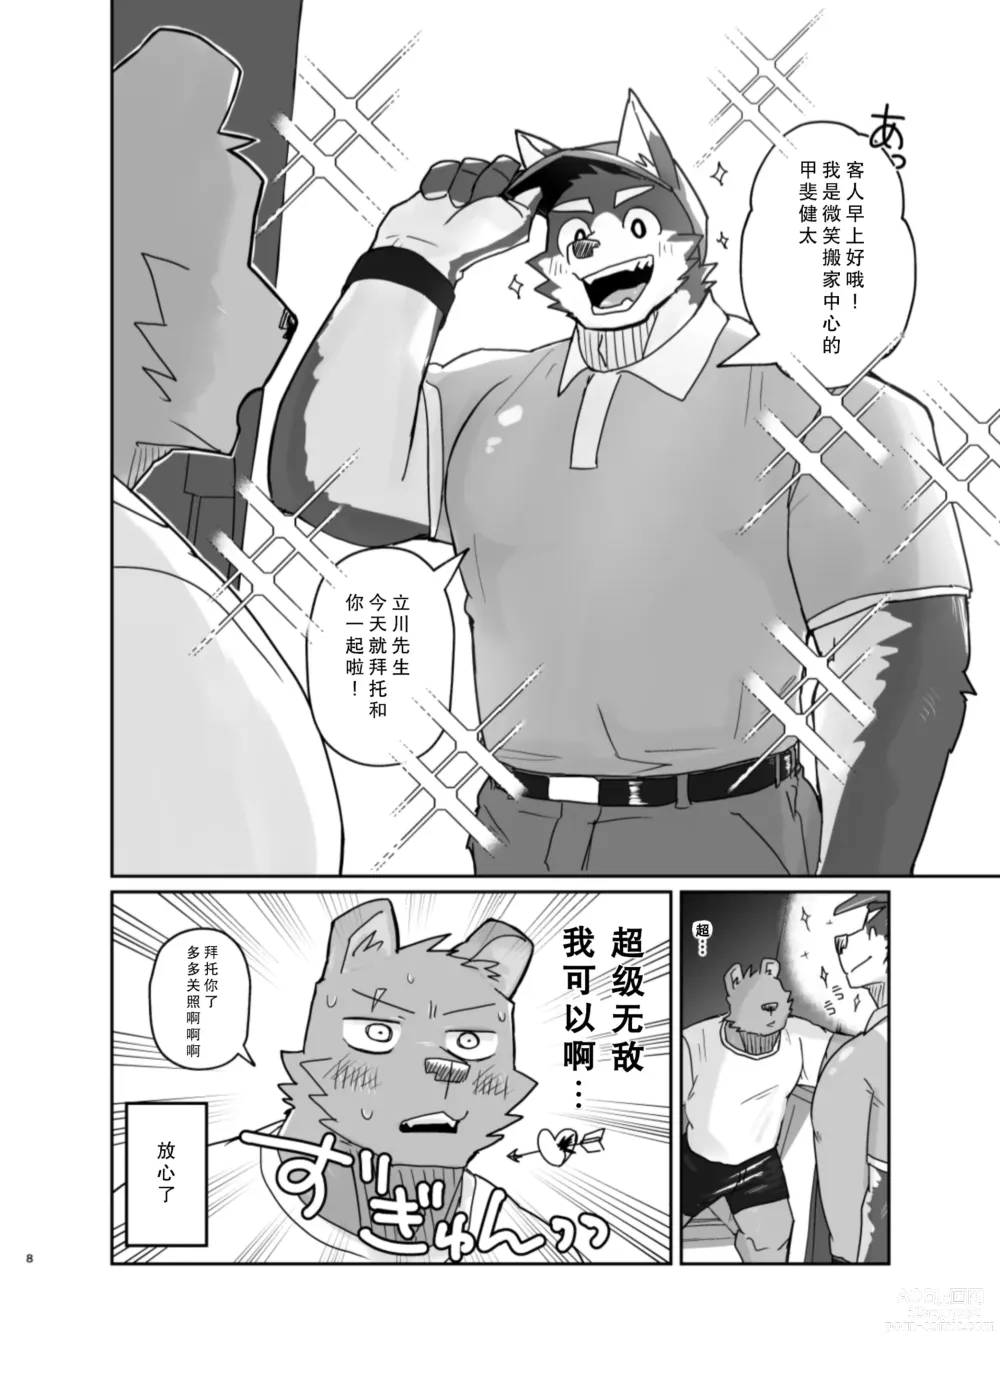 Page 8 of doujinshi 搬家的十分钟服务